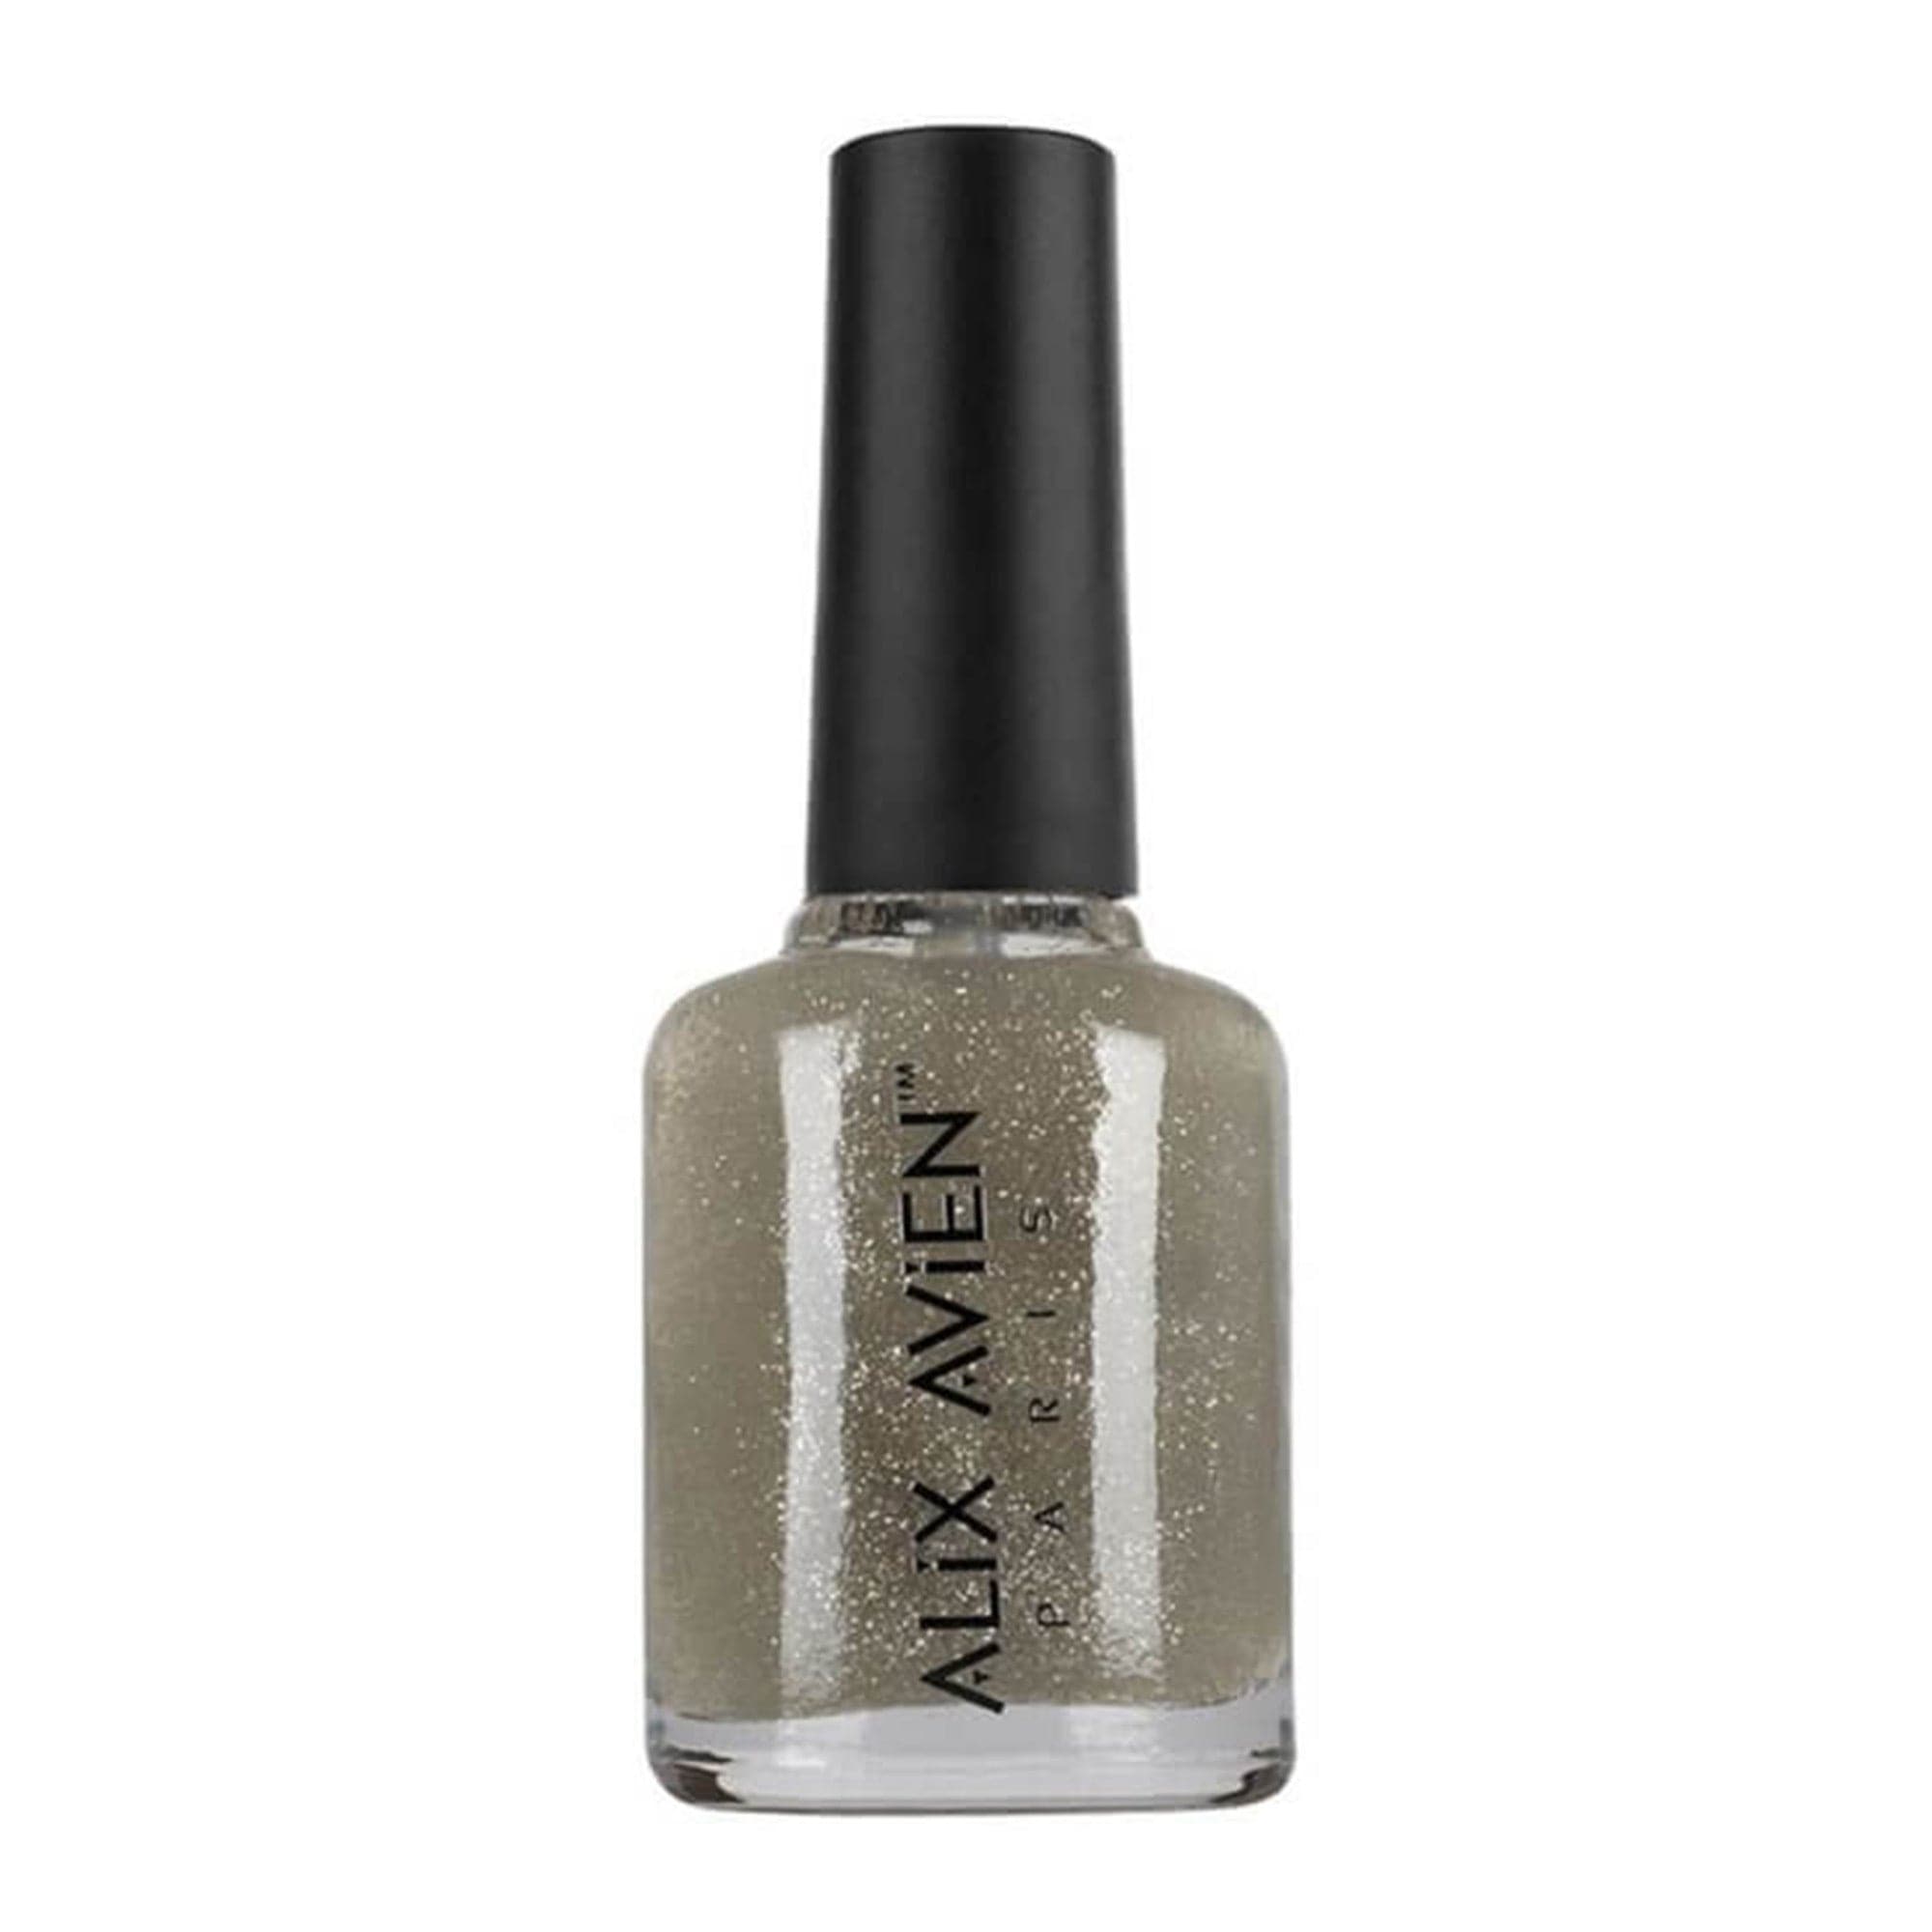 Alix Avien - Nail Polish No.36 (Silver Glitter)